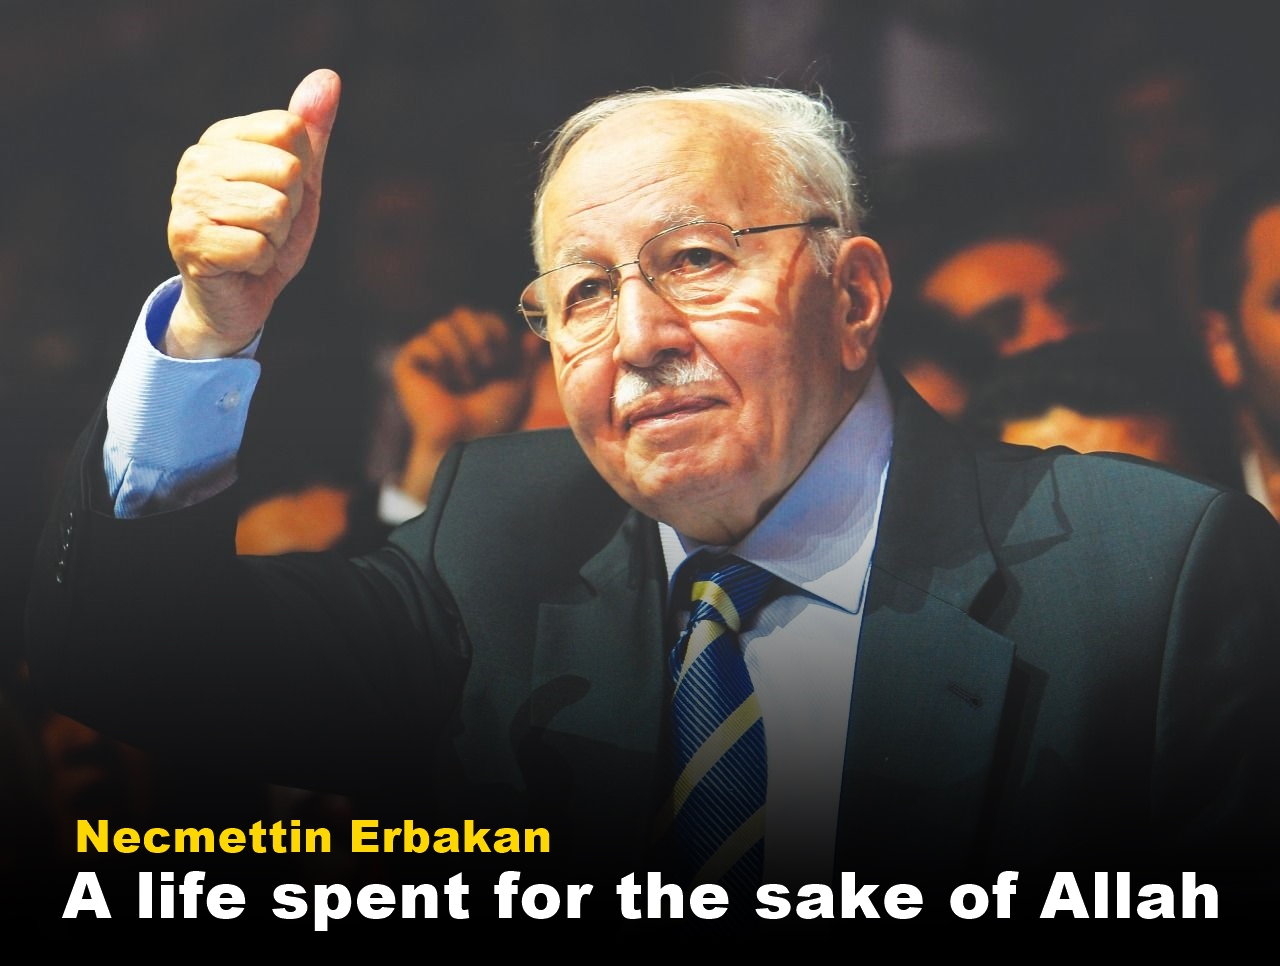 A life spent for the sake of Allah: Necmettin Erbakan